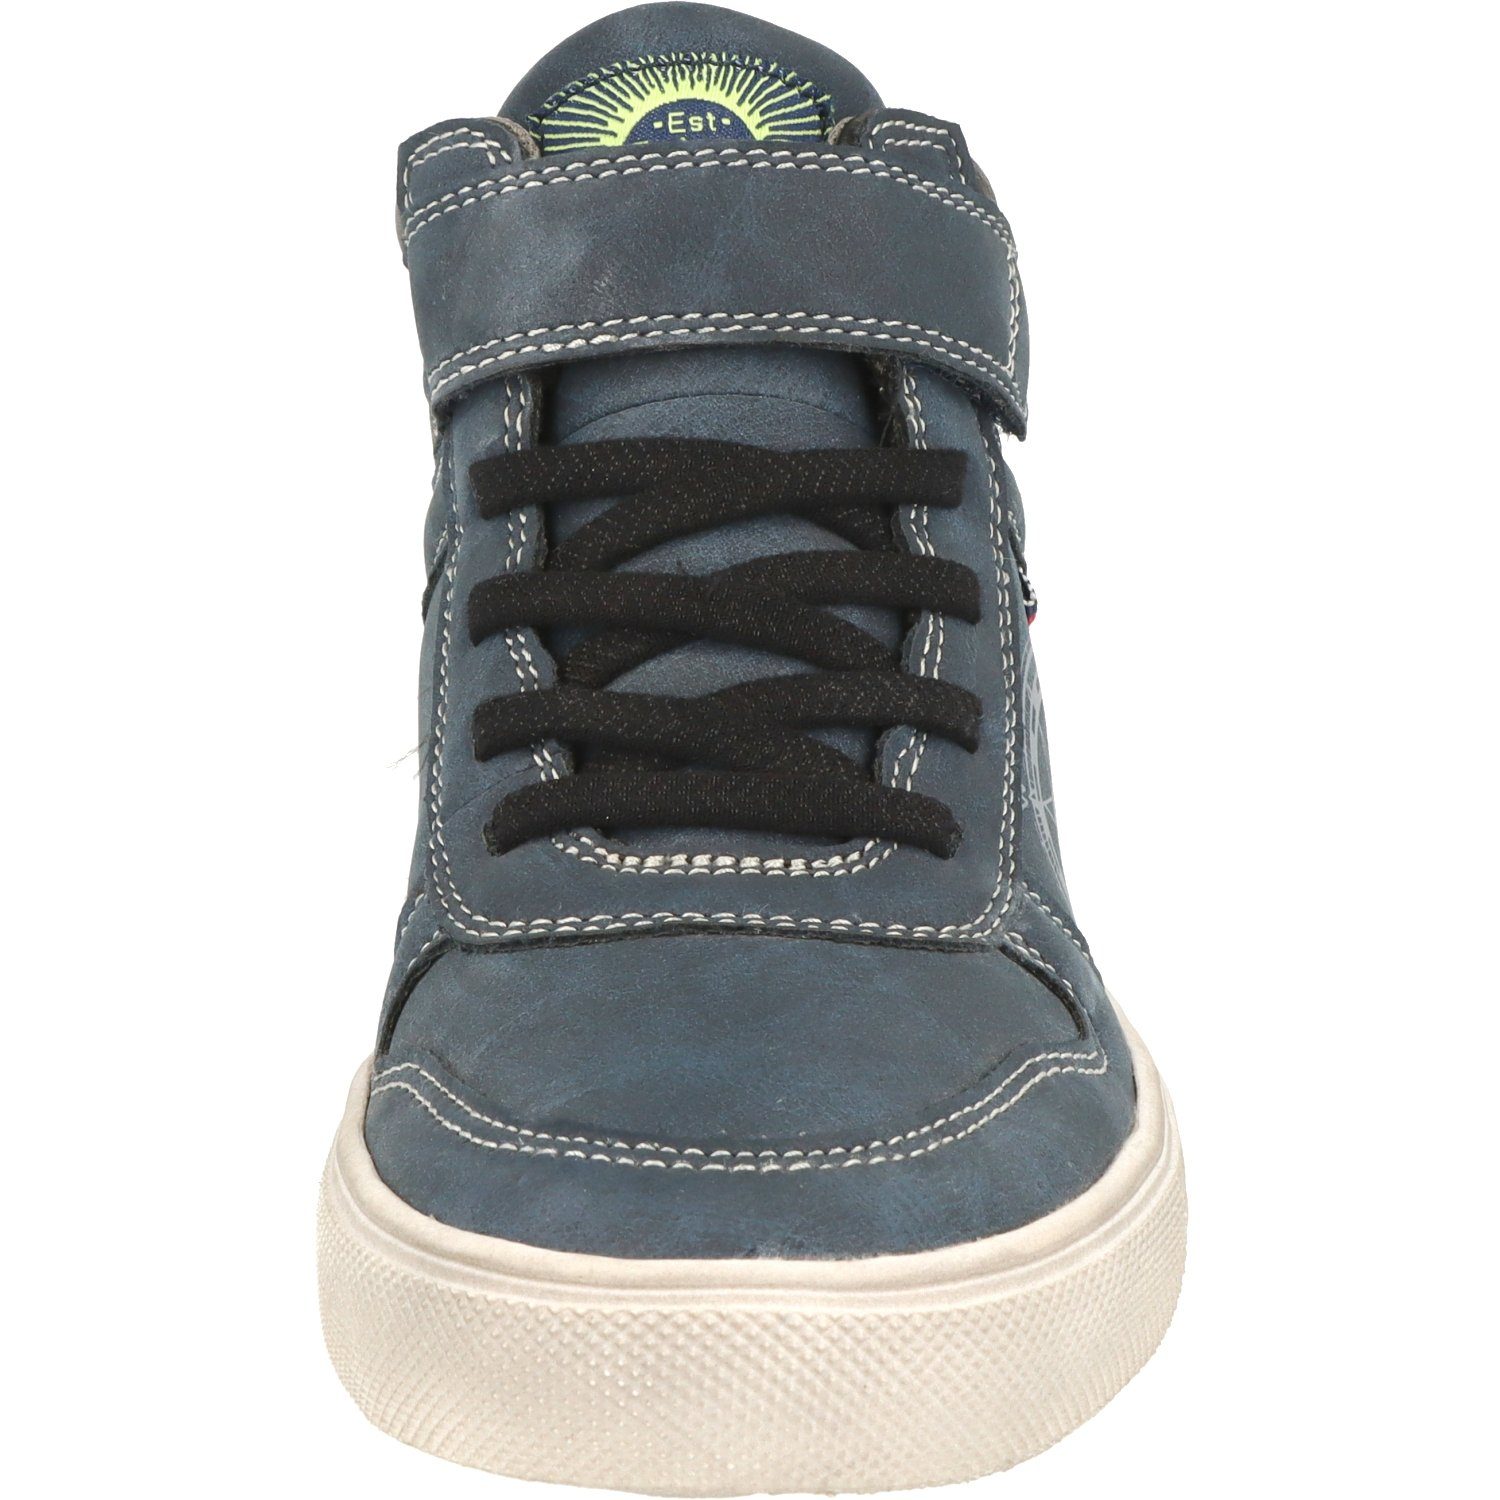 Schuhe Sneaker Jungen Hi-Top Navy Wasserabweisend Schnürschuhe 451-074 Indigo